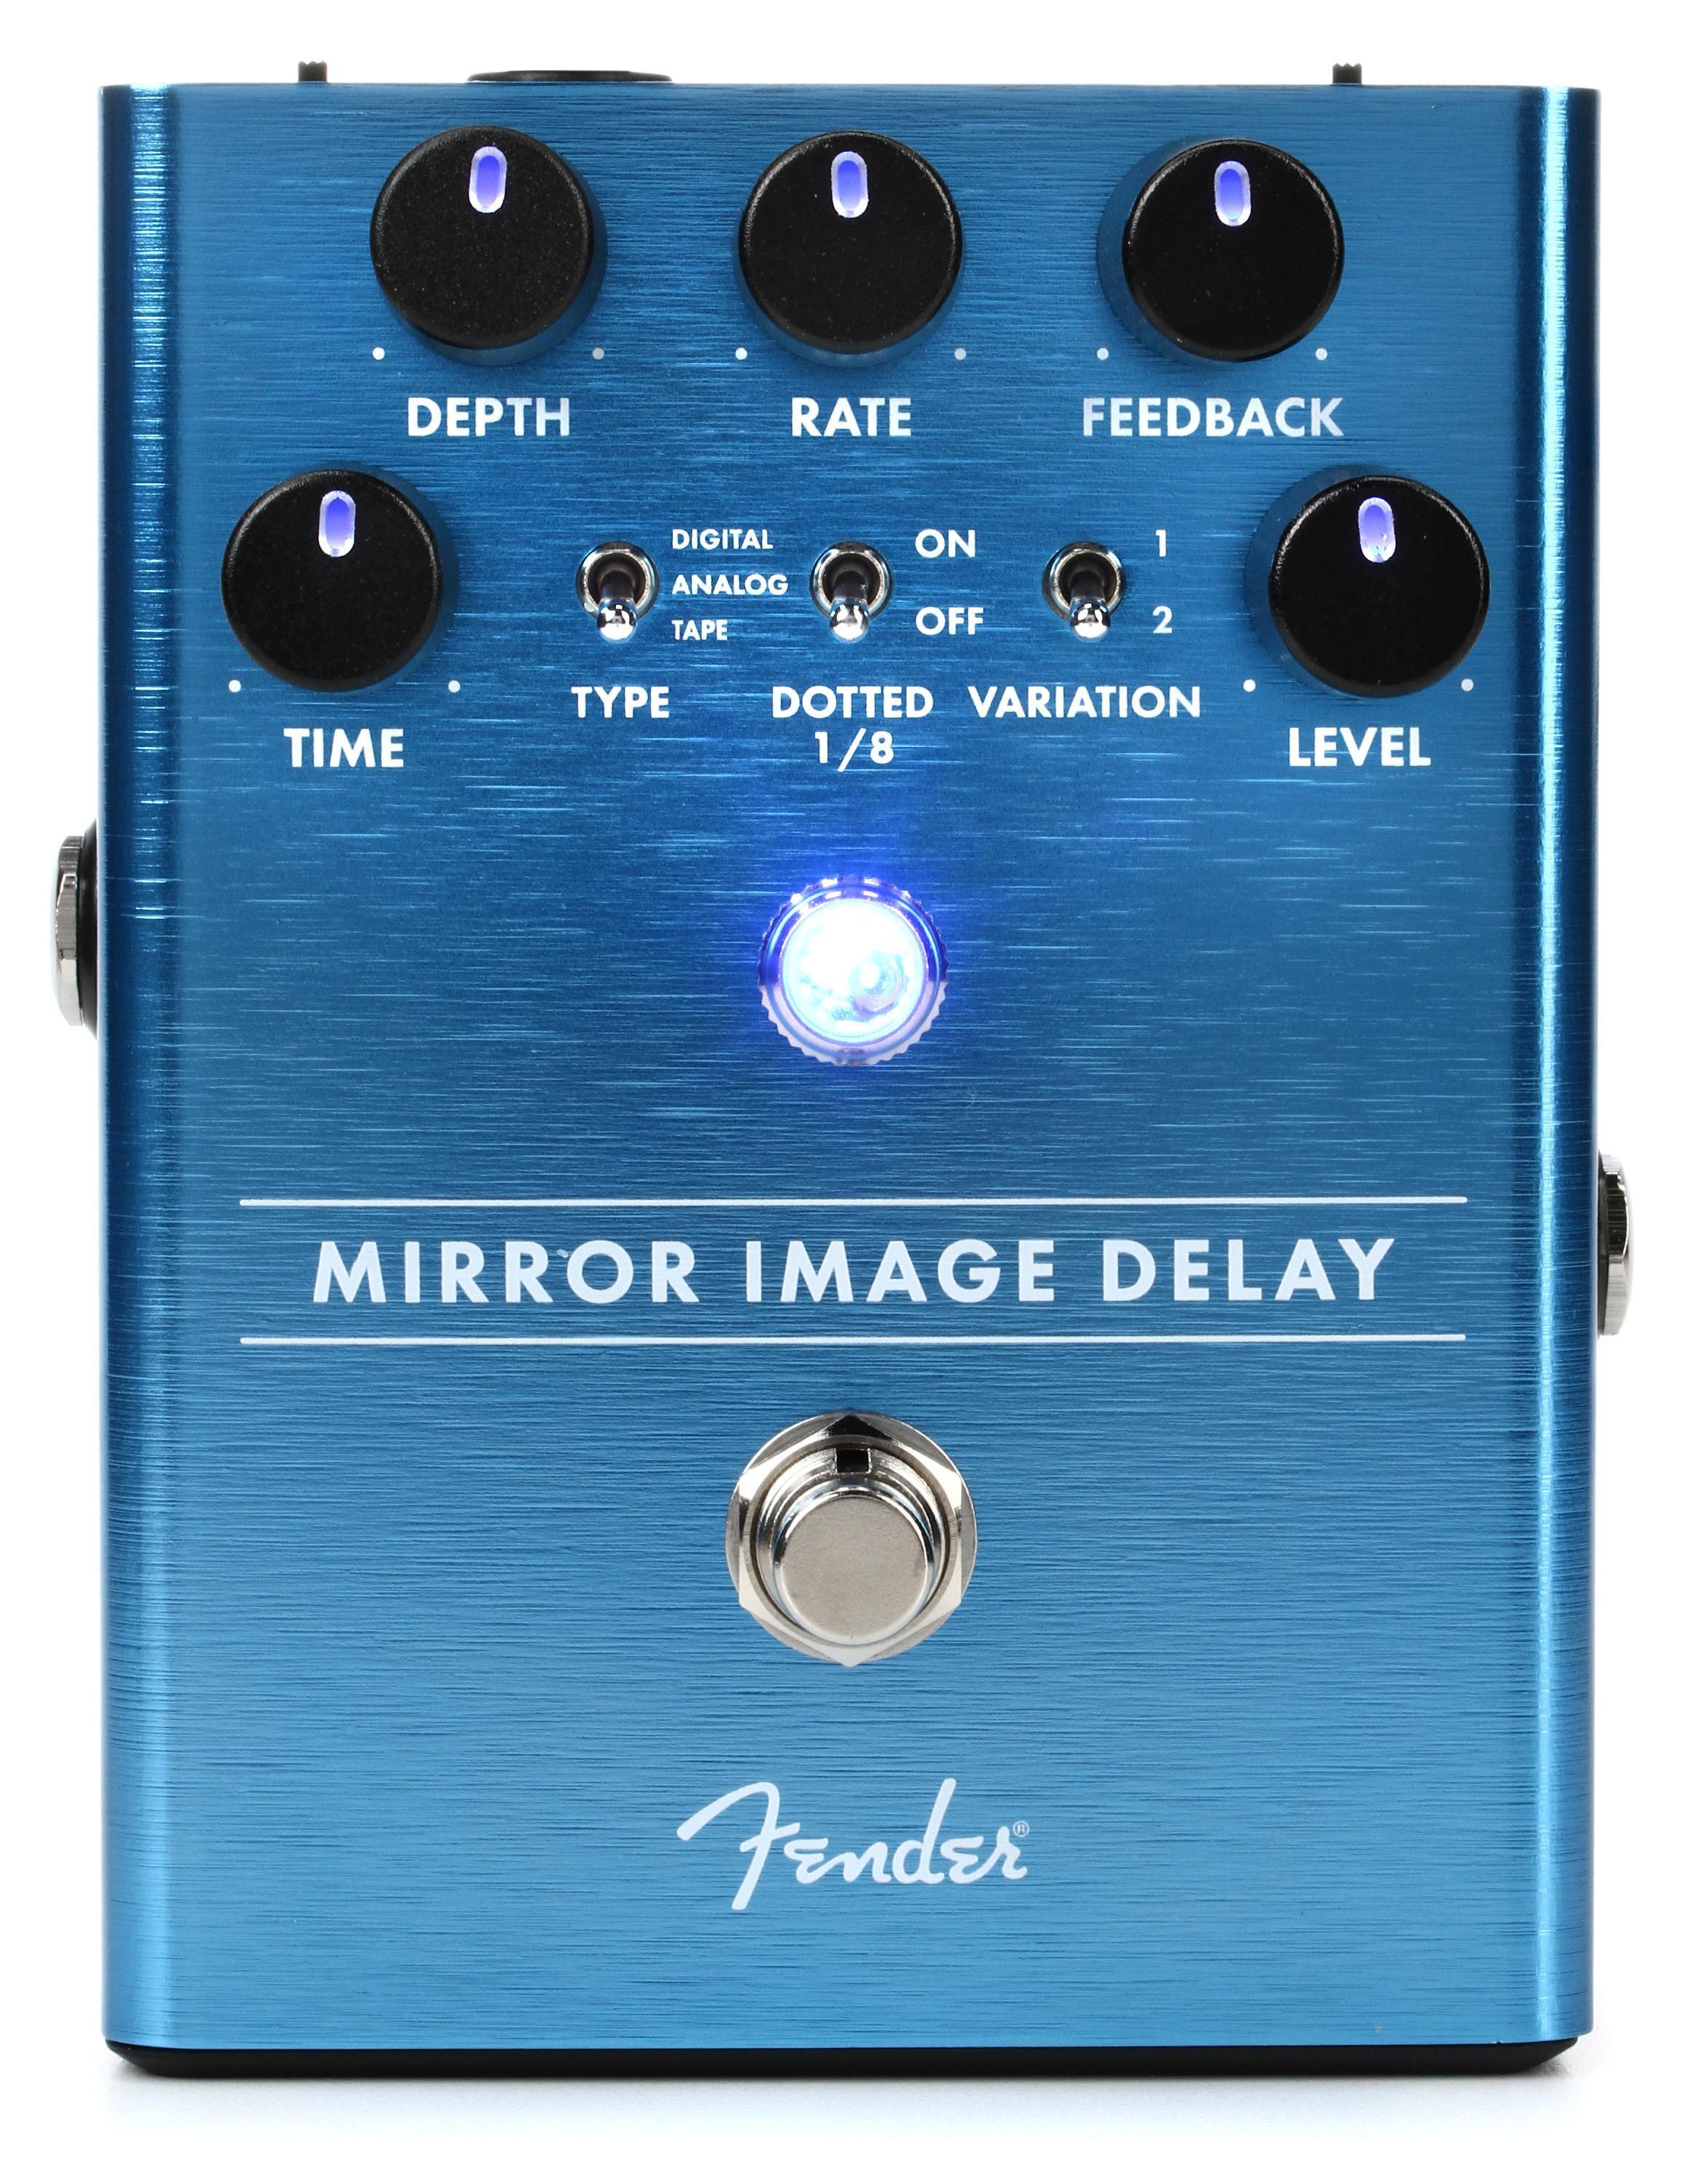 Fender mirror image delay